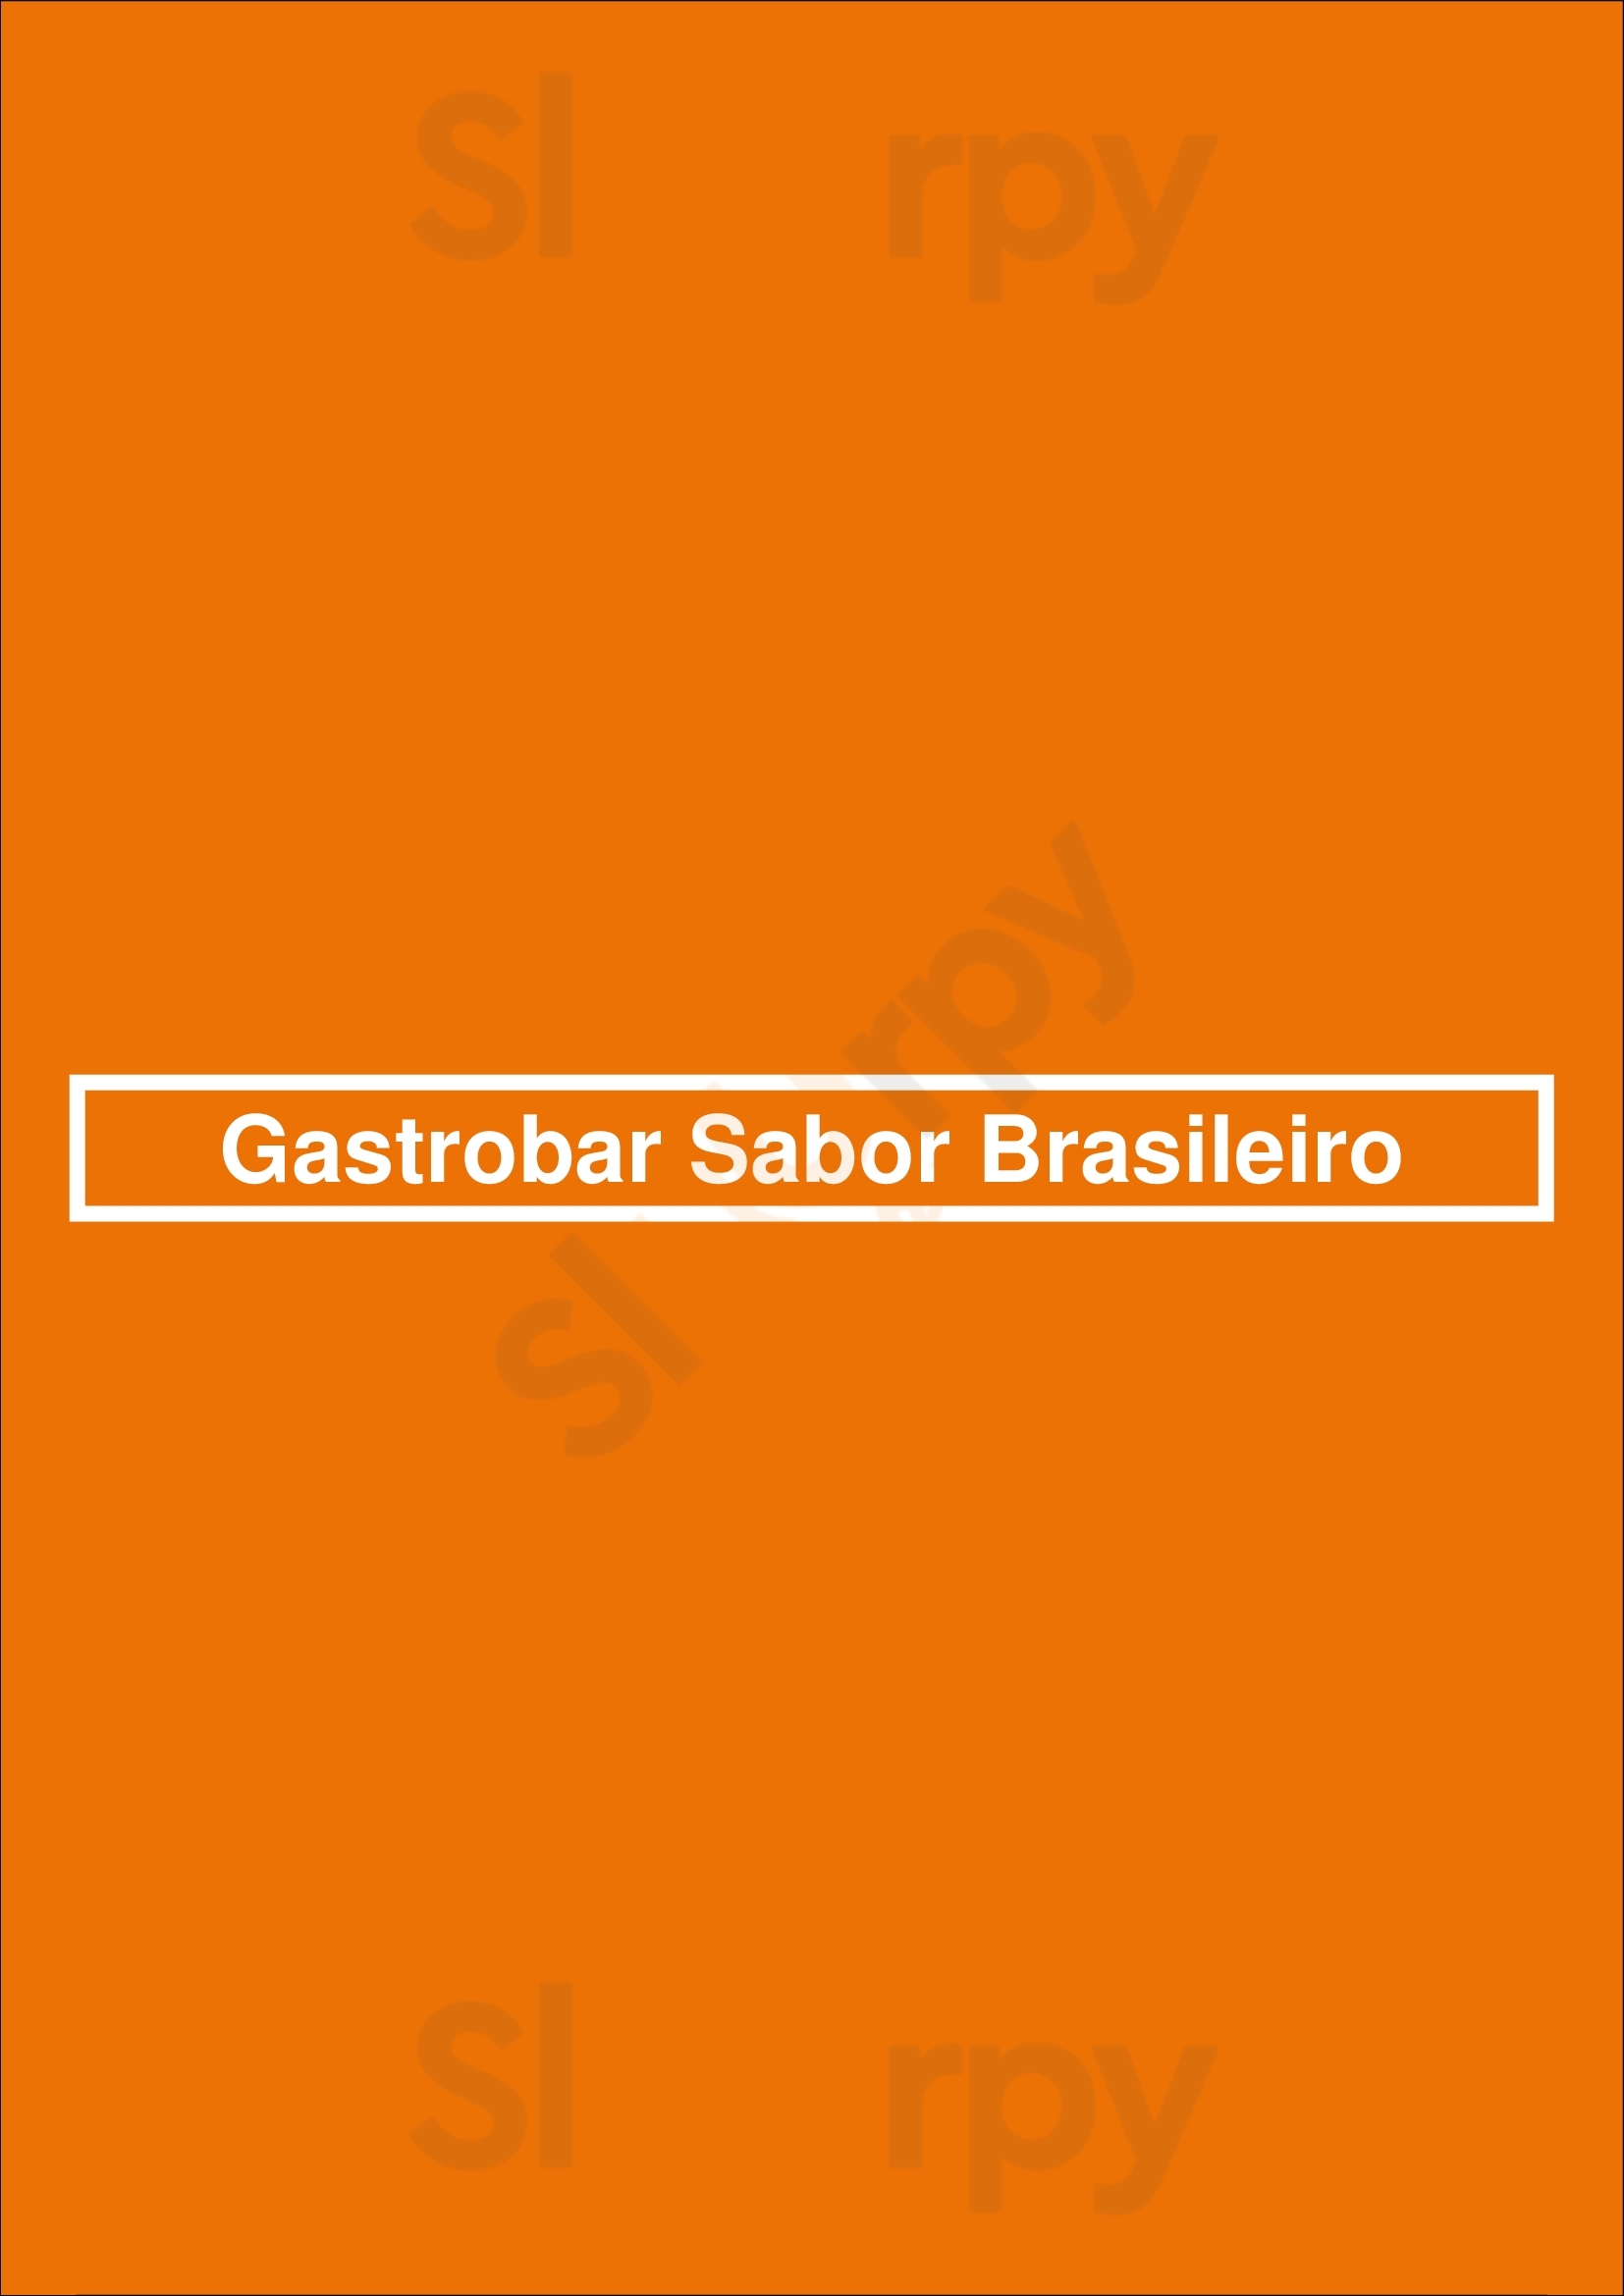 Gastrobar Sabor Brasileiro Valencia Menu - 1